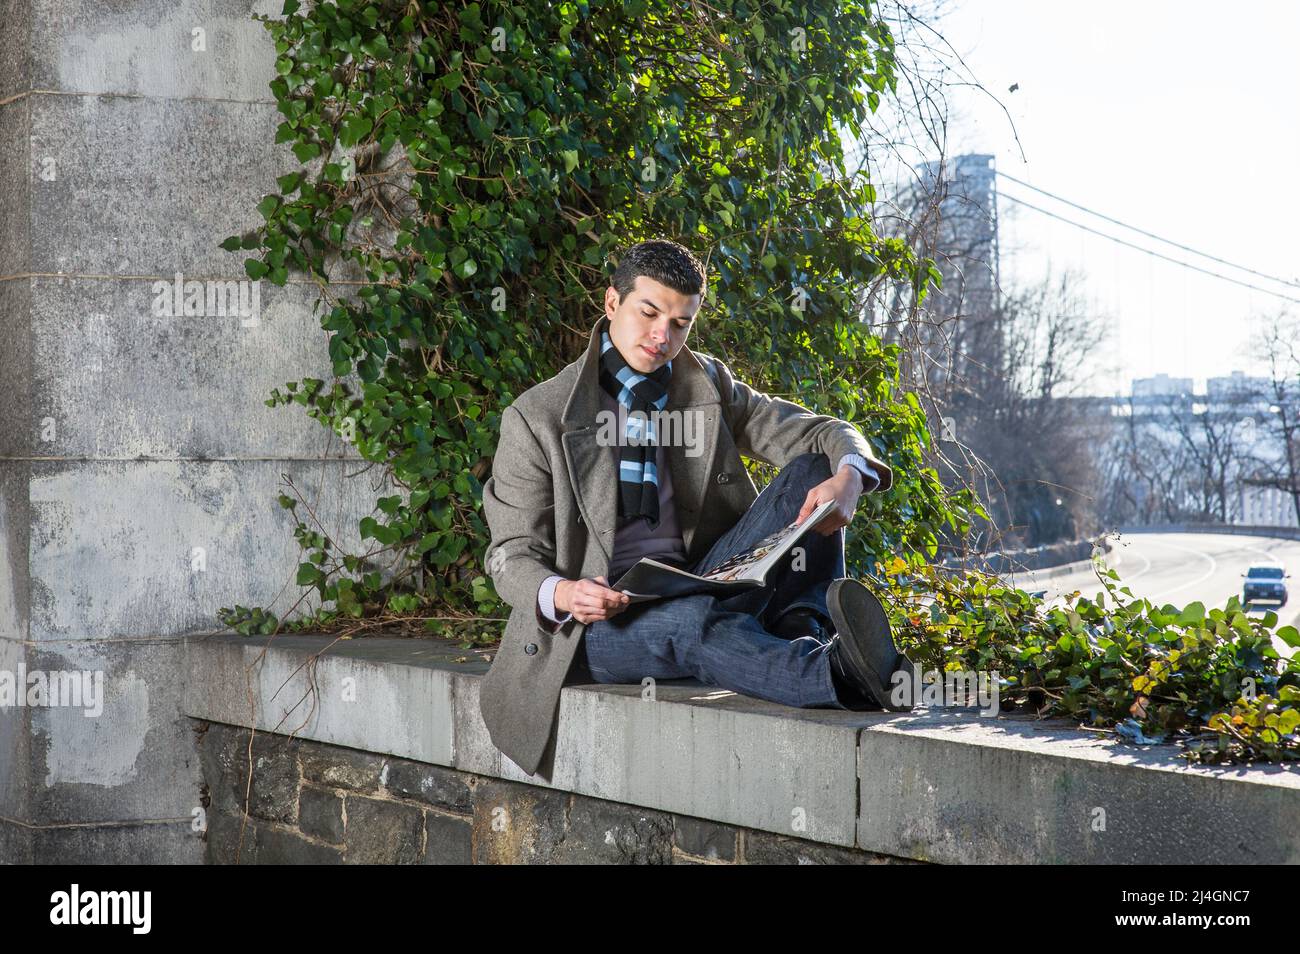 Ein junger Mann, der auf einem großen Rahmen sitzt und vor wilden grünen Pflanzen sitzt, liest ein Magazin Stockfoto